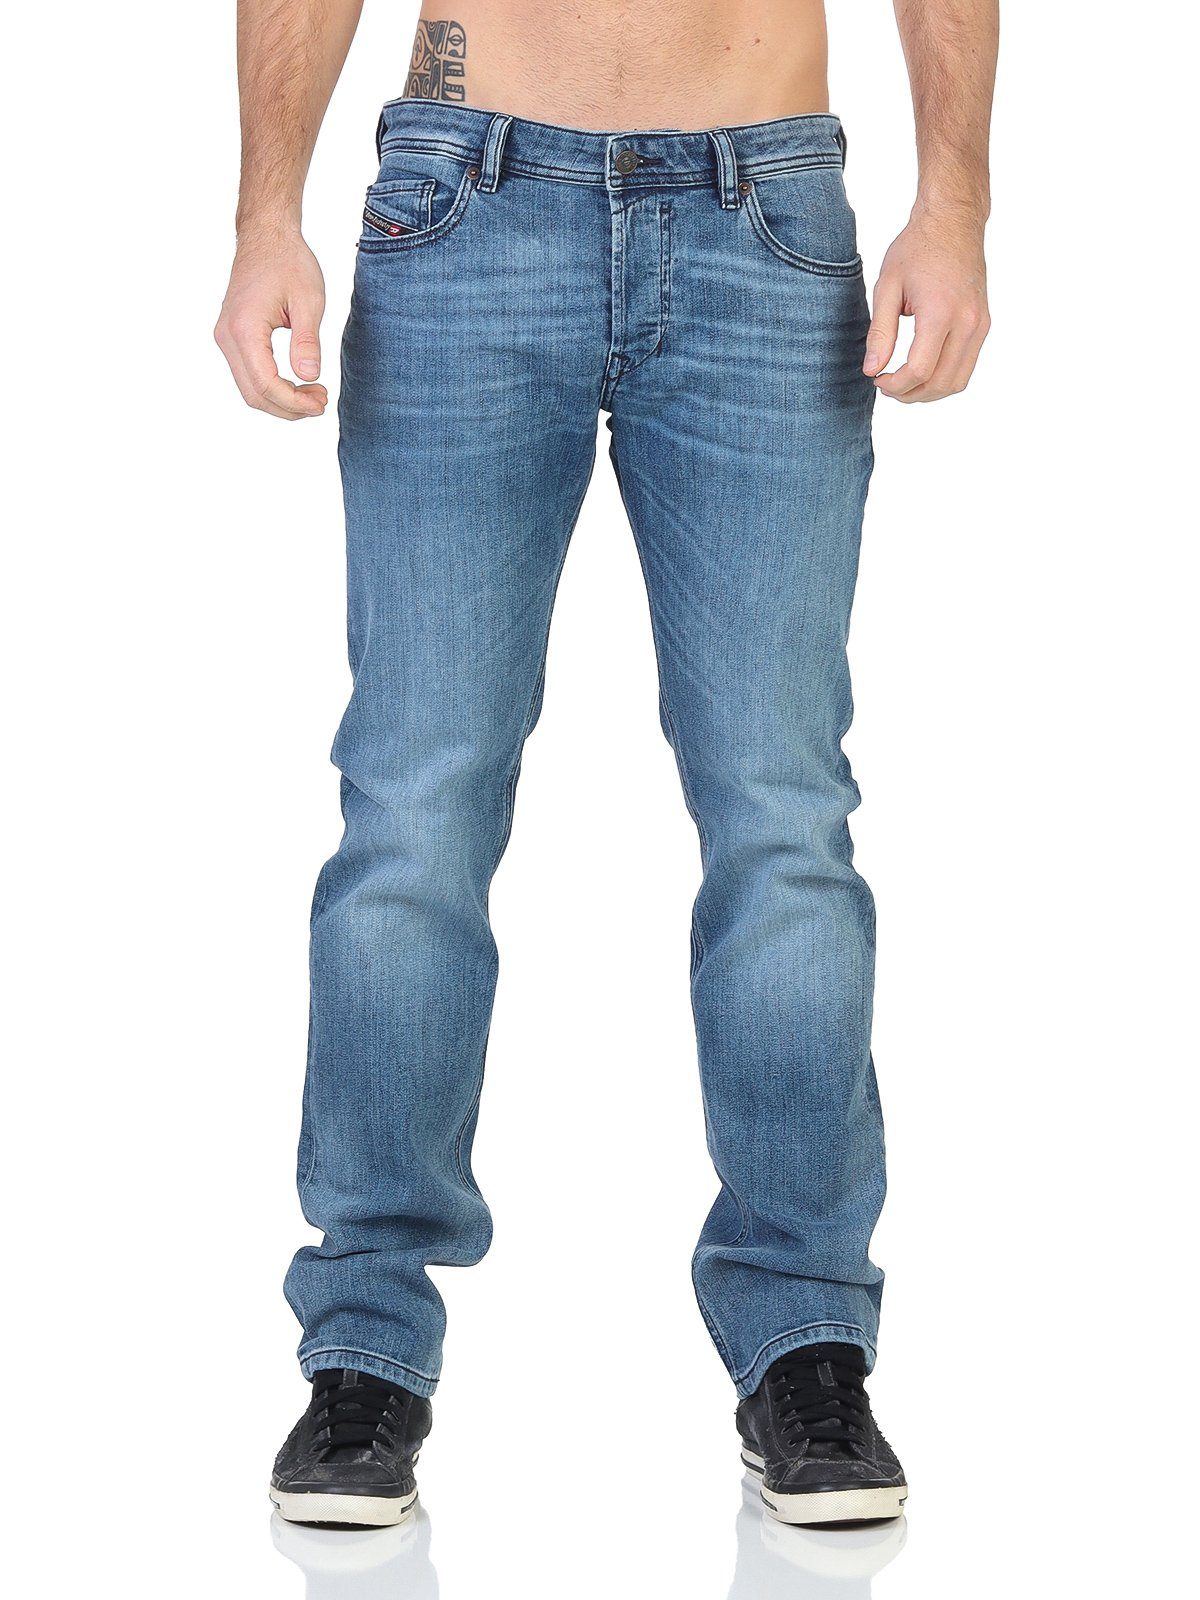 SAFADO-X - Gerader-Fit, Dezent-Used-Look Herren Diesel Diesel RM066 Jeans Slim-fit-Jeans 5-Pocket-Style,